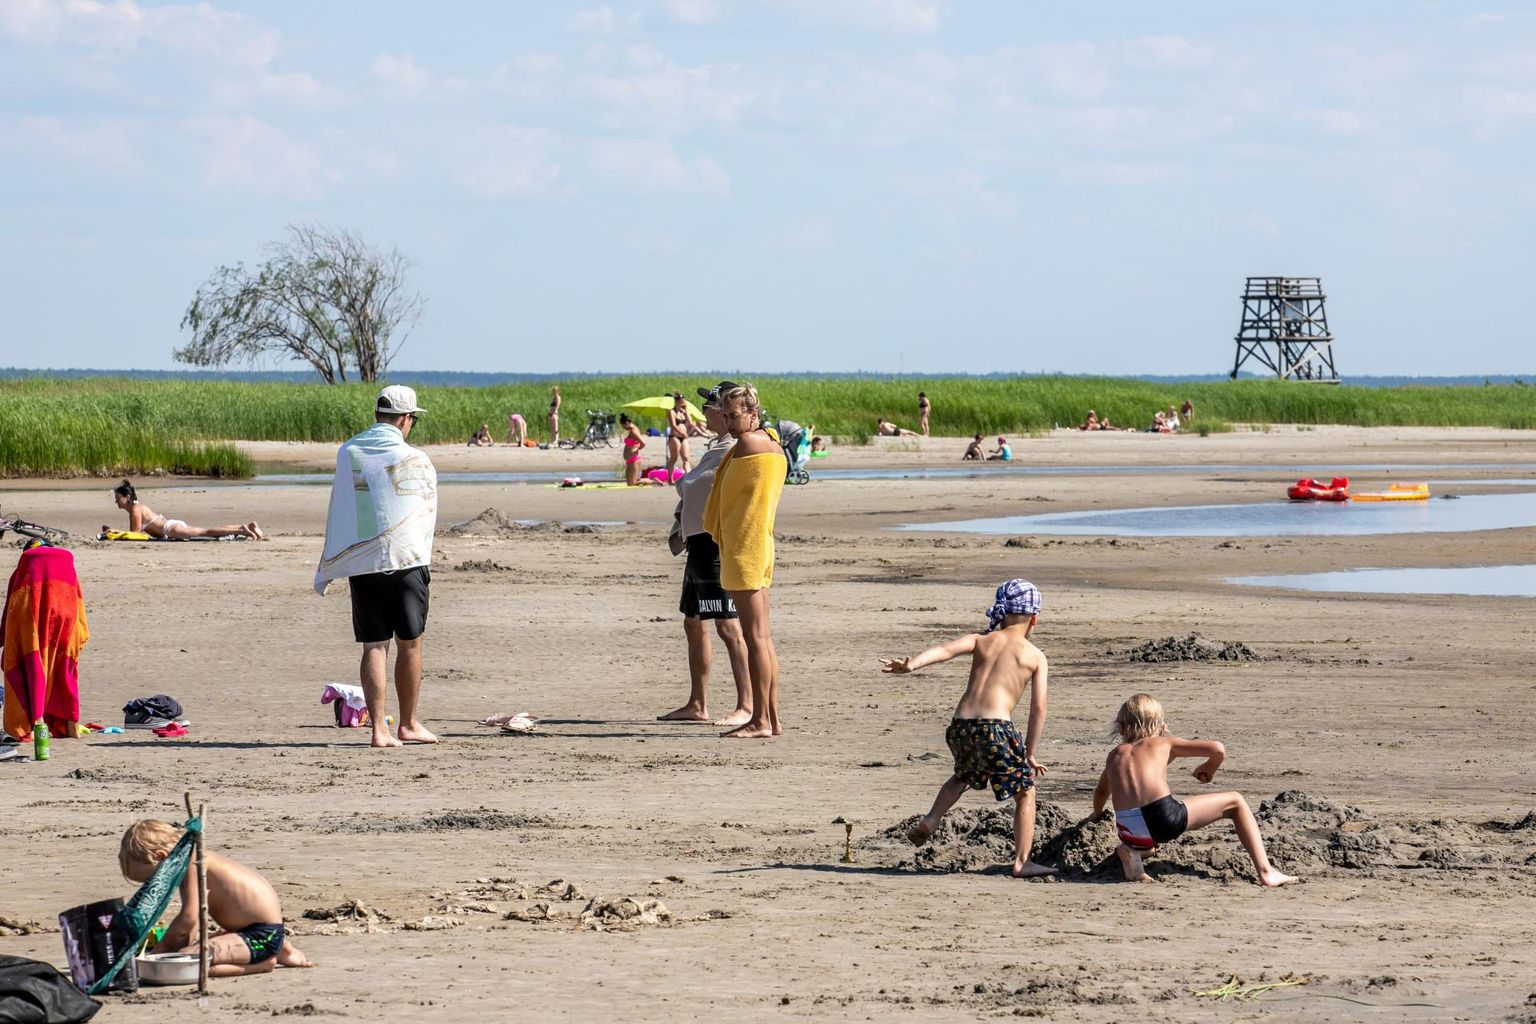 Vana-Pärnu randa ei soovitata praegu ujuma minna, sest suplusvee proovidest avastati soole enterokokke lubatust enam.